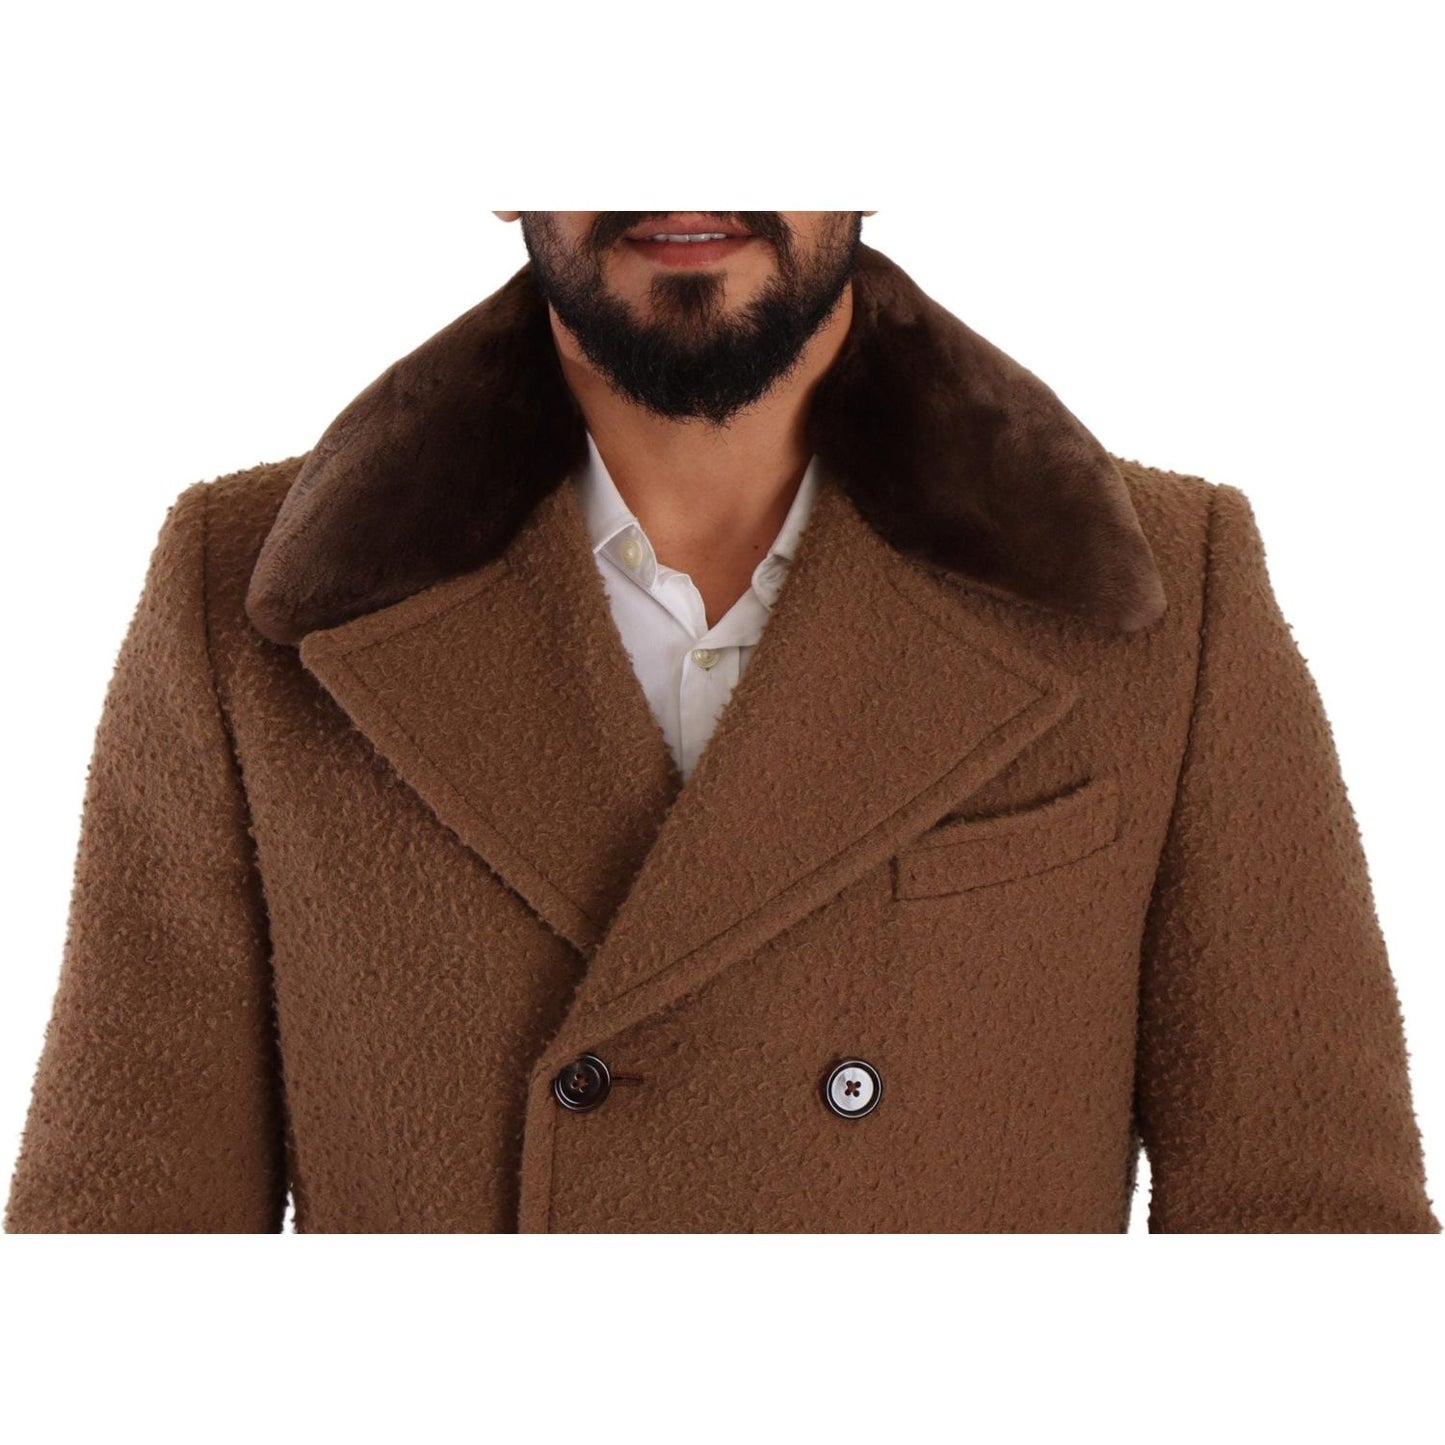 Dolce & Gabbana Elegant Double Breasted Wool Overcoat brown-wool-long-double-breasted-overcoat-jacket IMG_5044-scaled-83ba80aa-afb.jpg